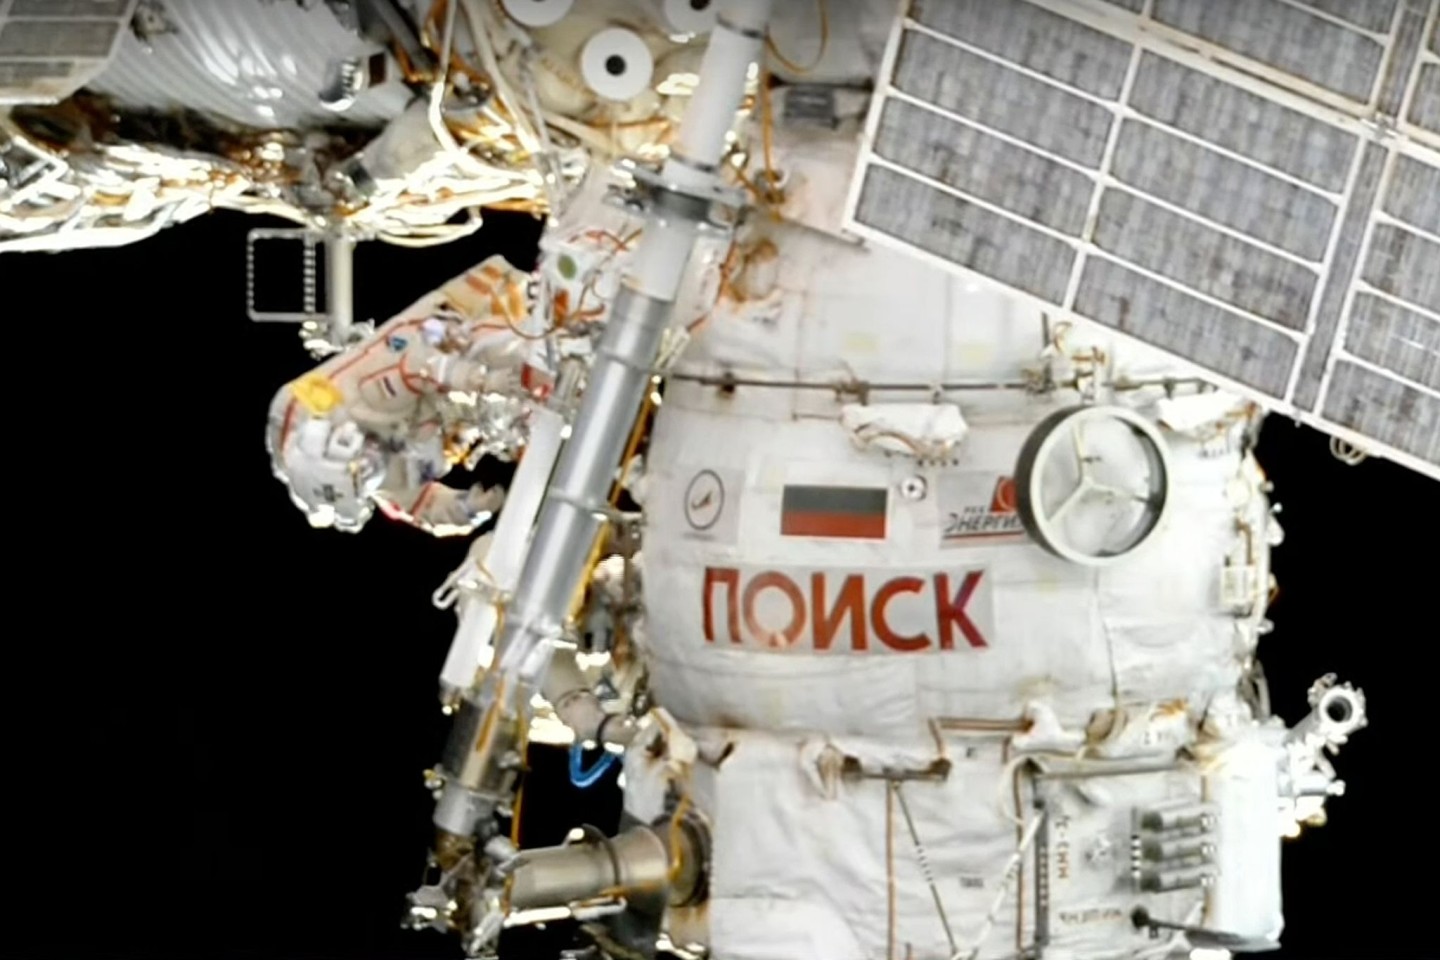 Oleg Artemjew und Denis Matwejew während ihres Weltraumspaziergangs auf der Internationalen Raumstation.